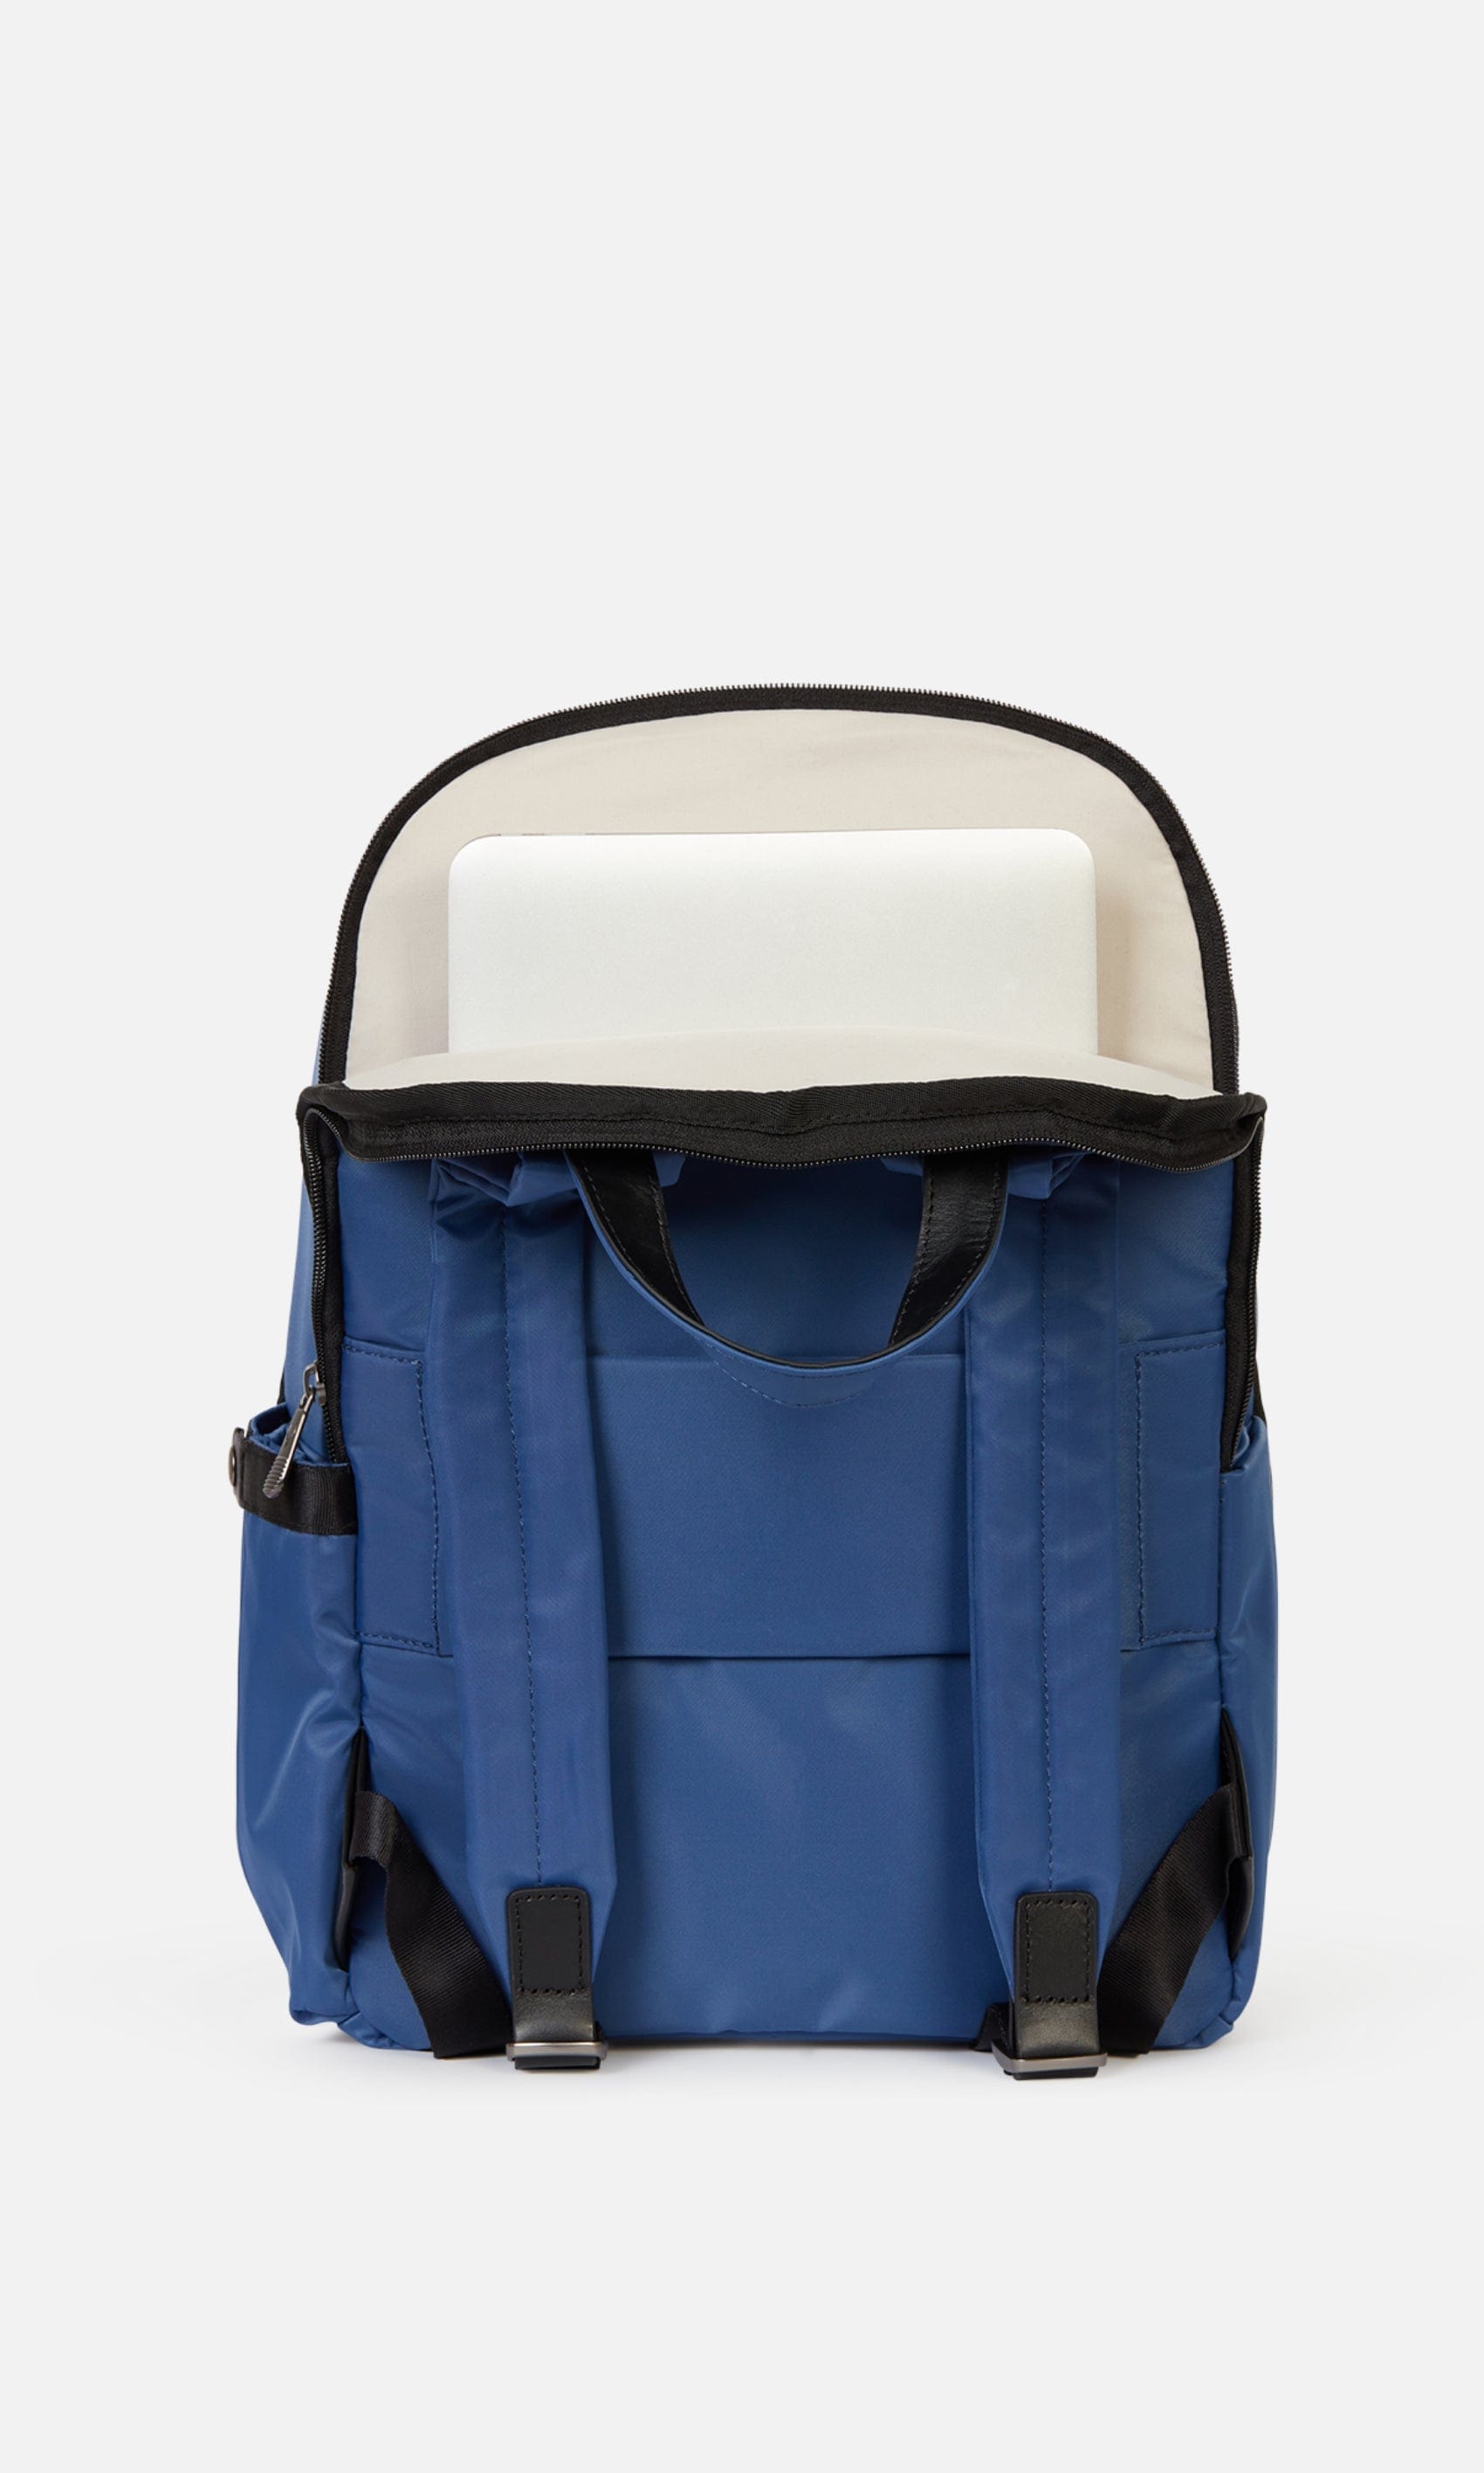 Antler Luggage -  Chelsea backpack in azure - Backpacks Chelsea Backpack Azure (Blue) | Travel & Lifestyle Bags | Antler UK